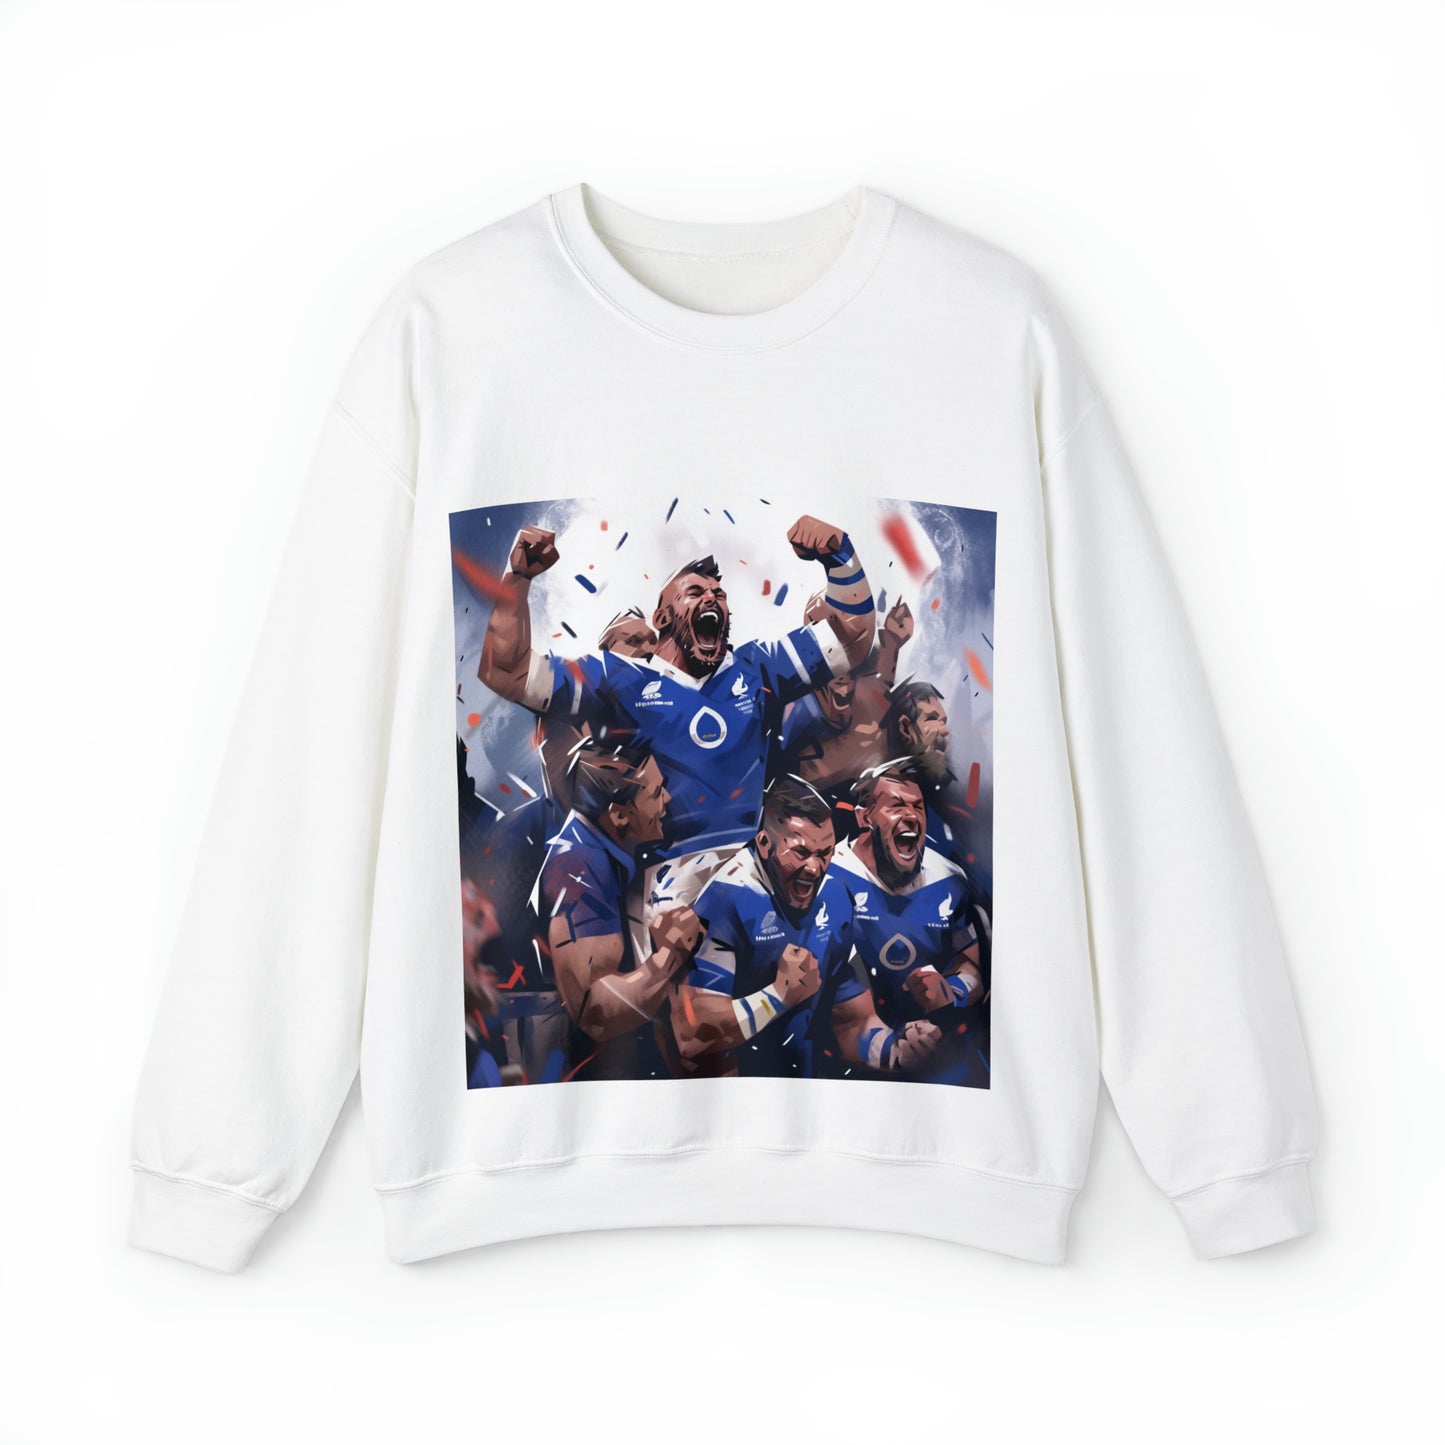 France Celebrating - light sweatshirts